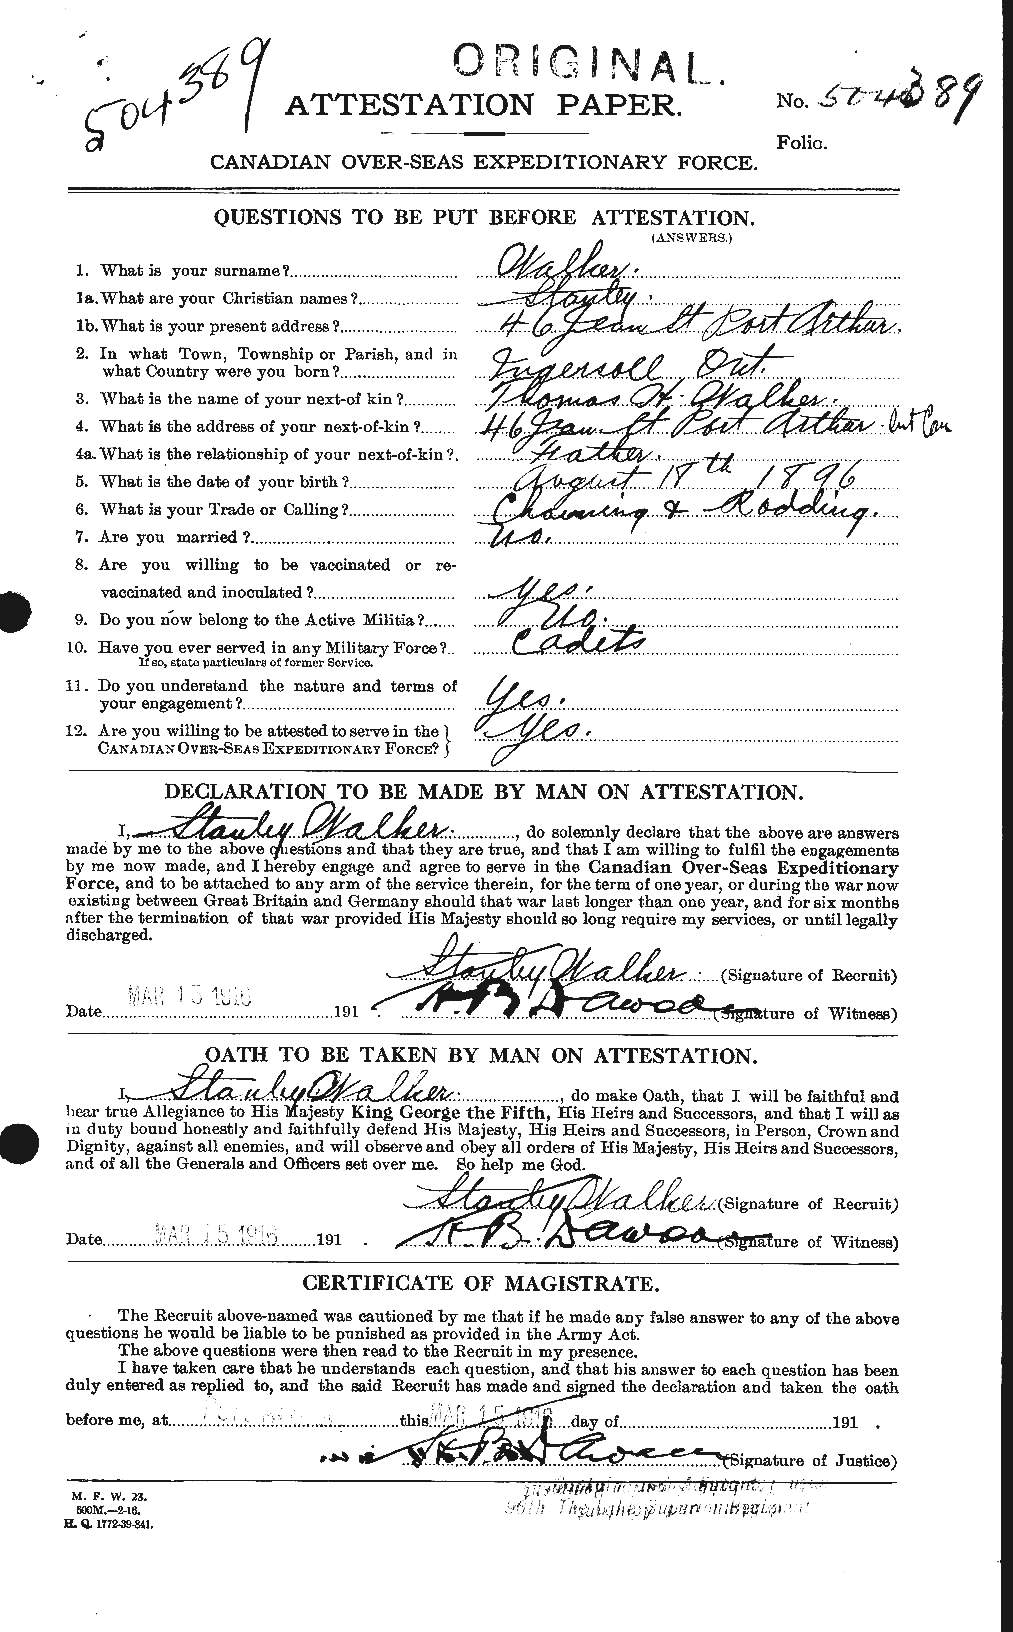 Dossiers du Personnel de la Première Guerre mondiale - CEC 655775a